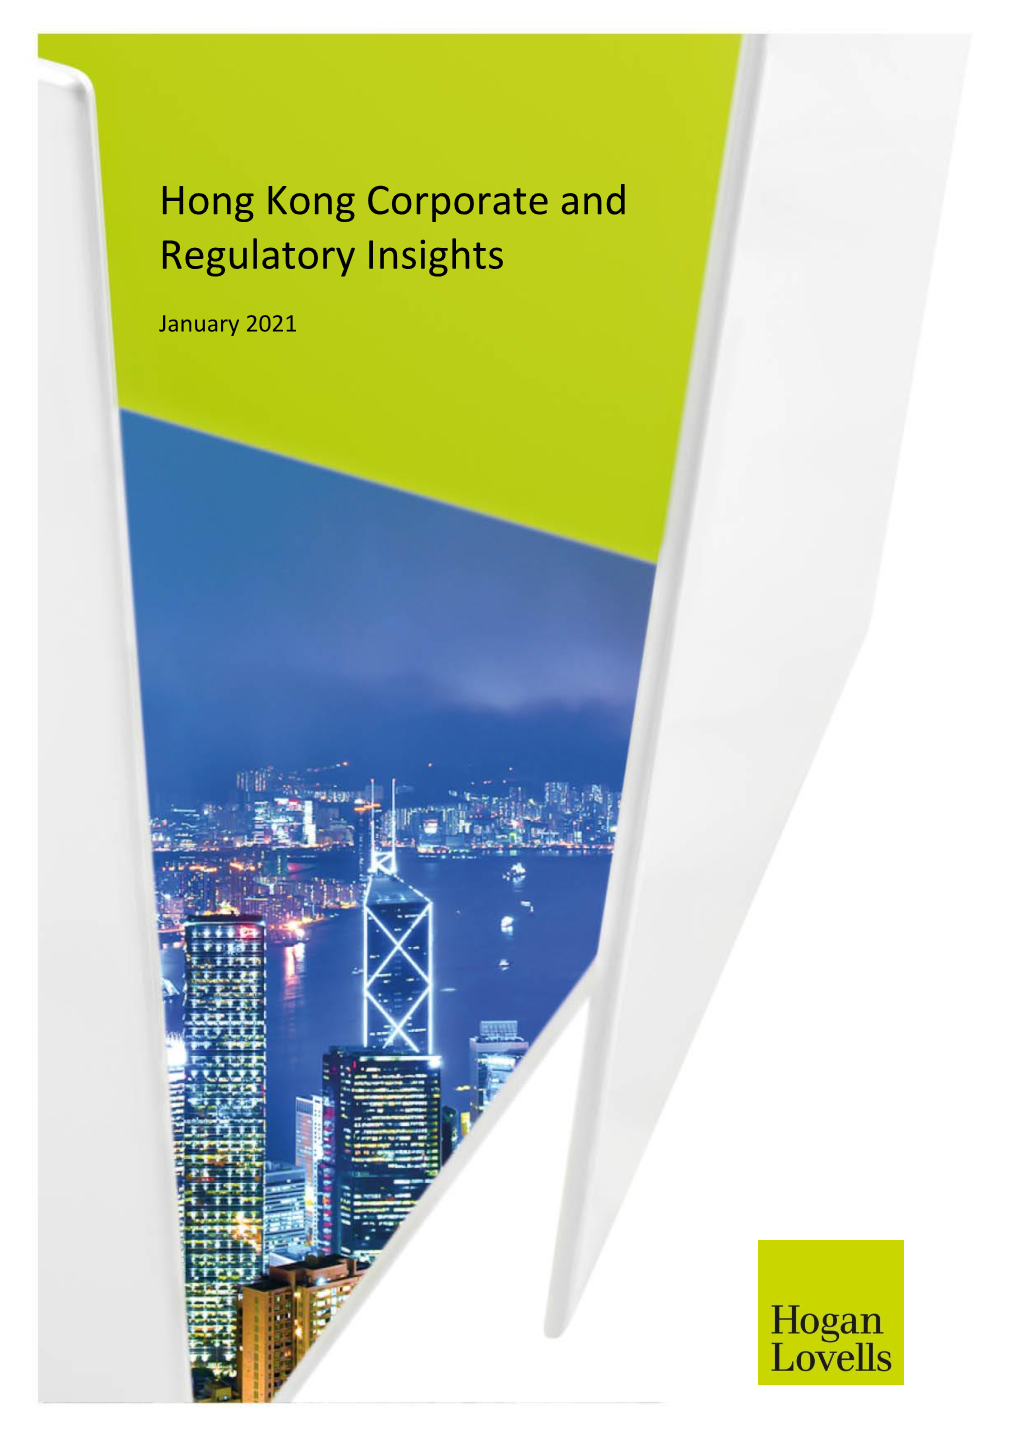 Hong Kong Corporate and Regulatory Insights